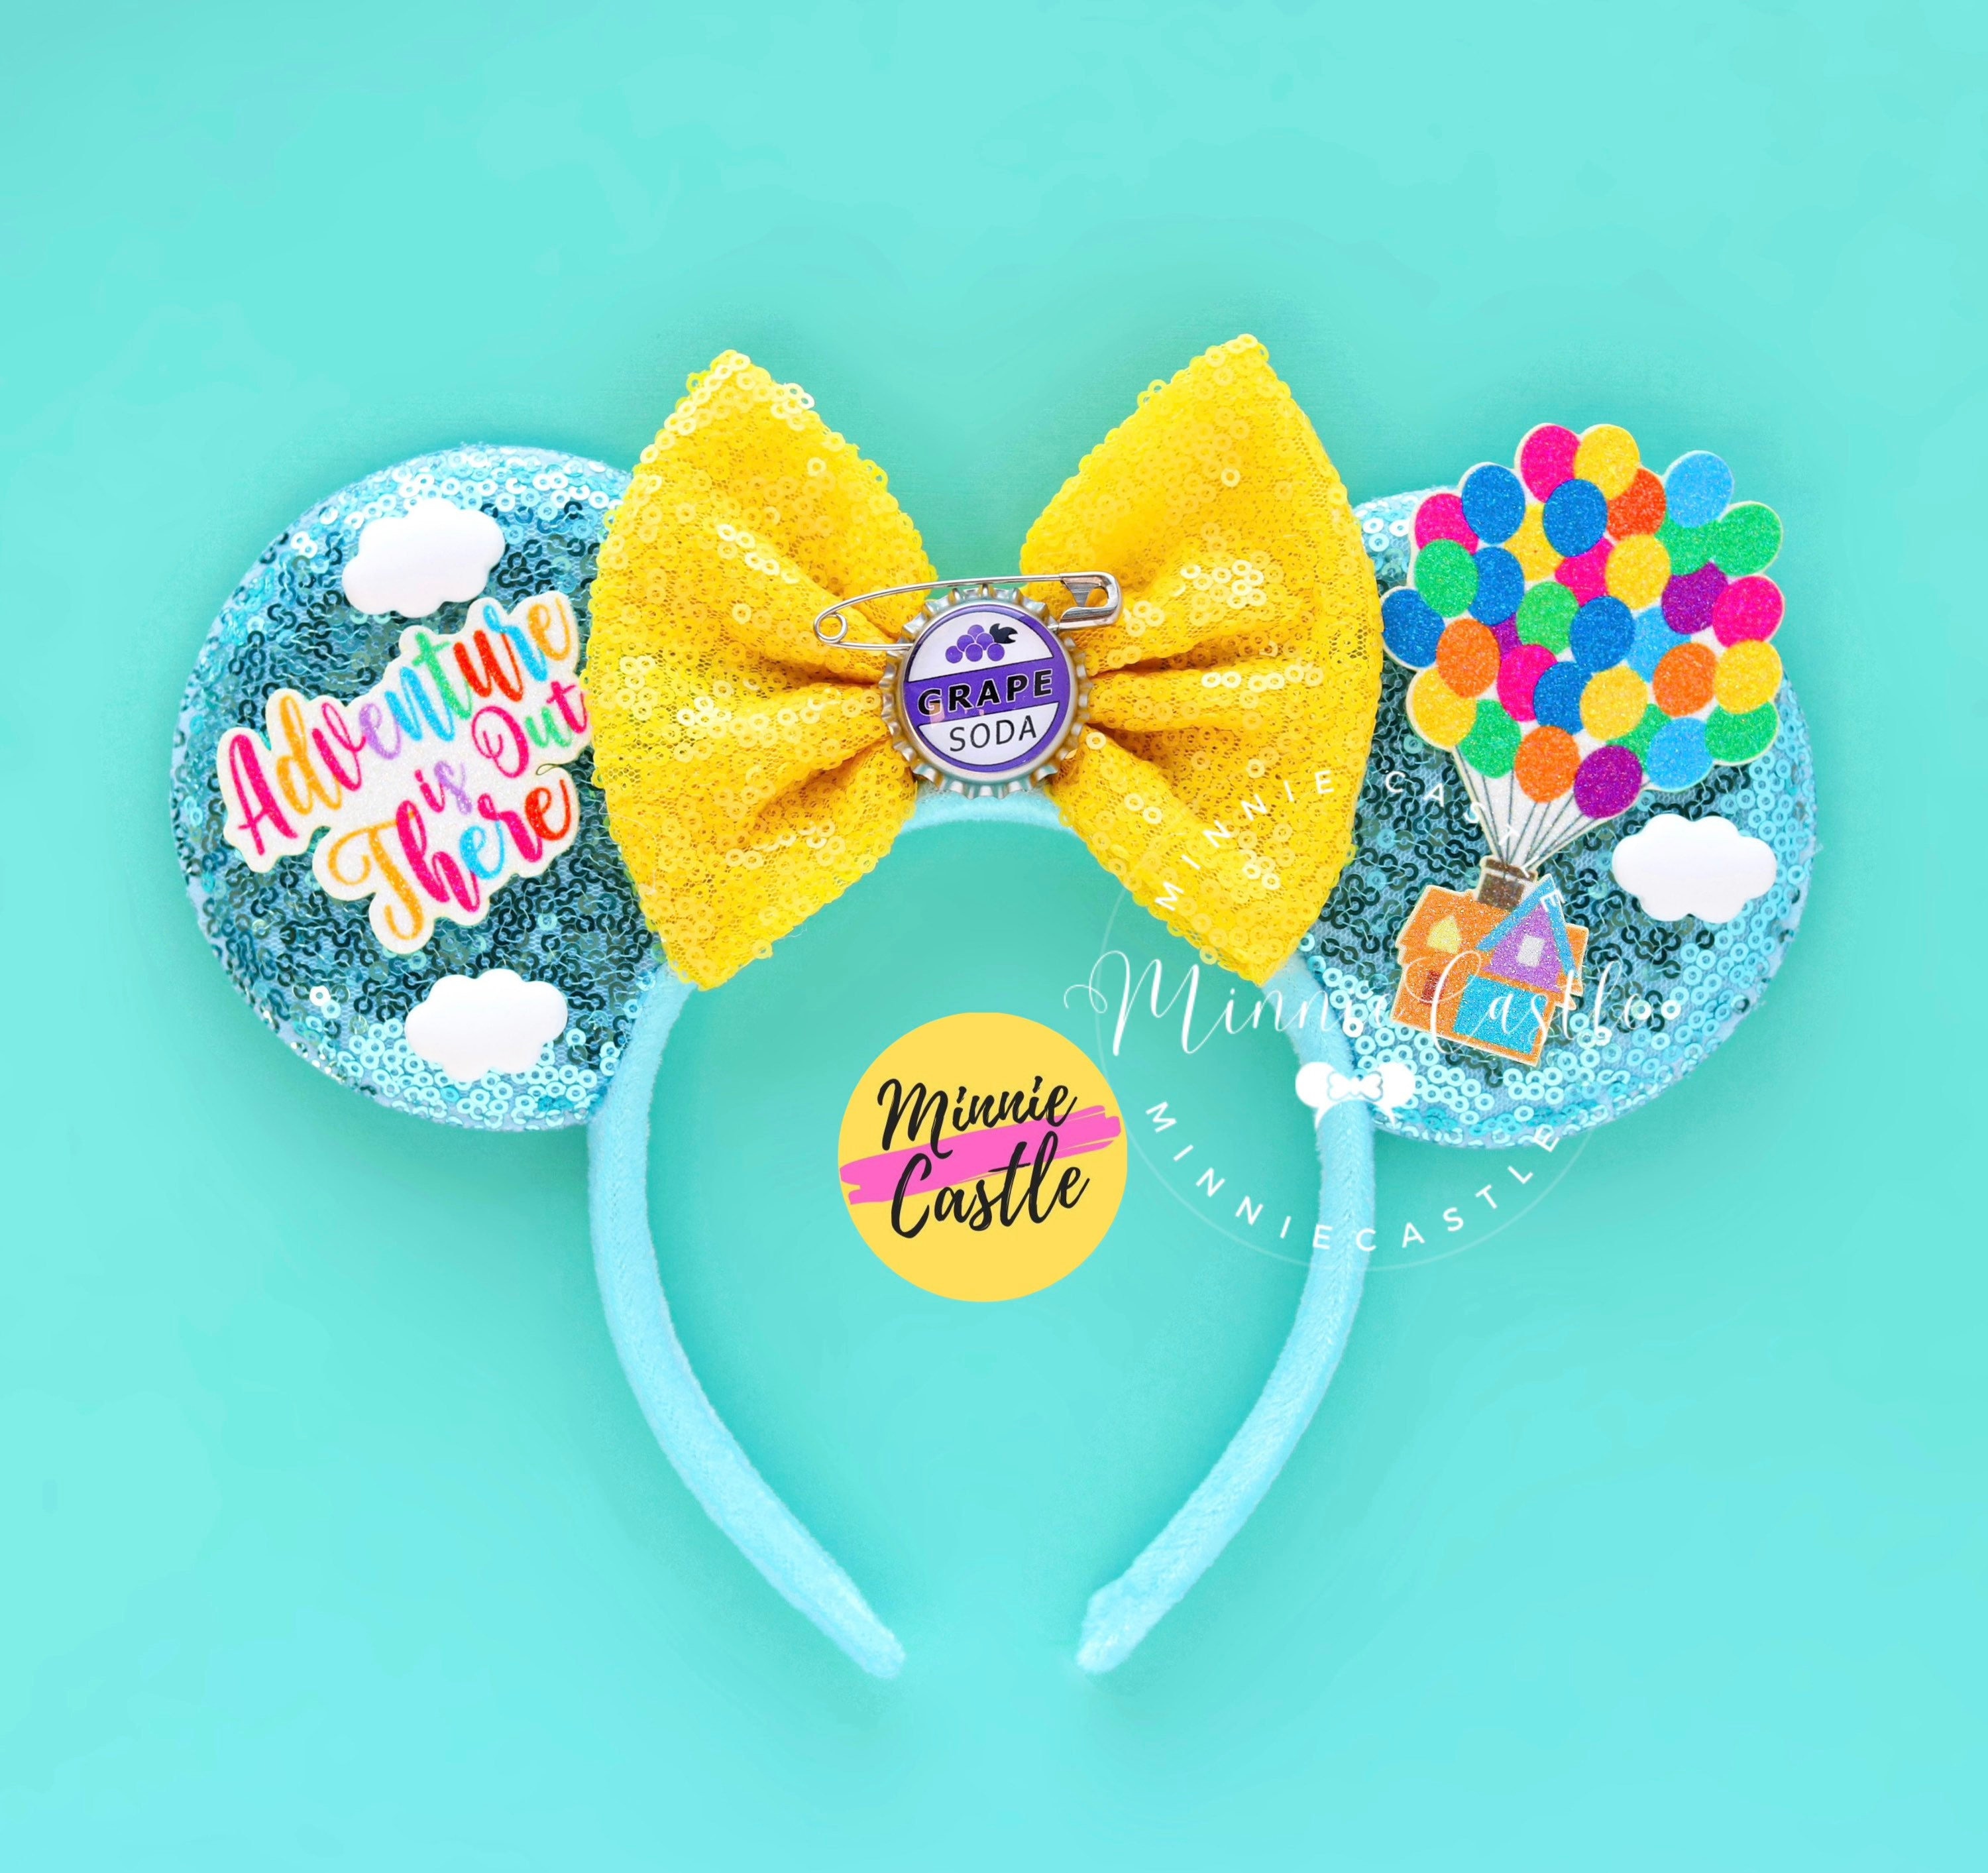 Exclusivo de Disney Parks - Diadema con orejas de Minnie Mickey - Up Grape  Soda